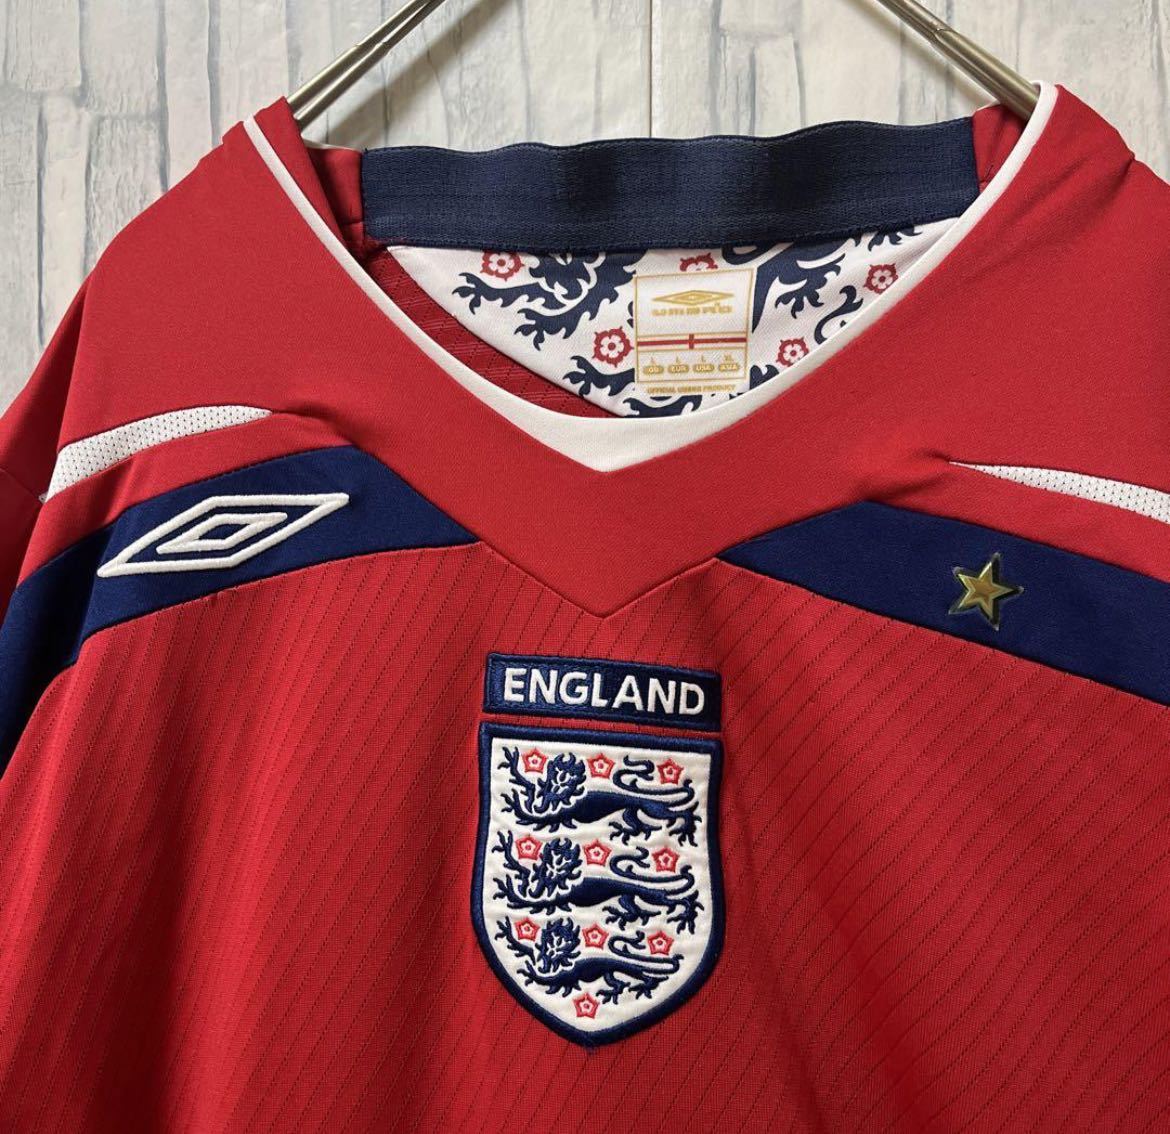 UMBRO アンブロ サッカー イングランド代表 ユニフォーム ゲームシャツ ロンT 長袖 刺繍ロゴ ワッペン サイズXL 2008年-2010年  送料無料